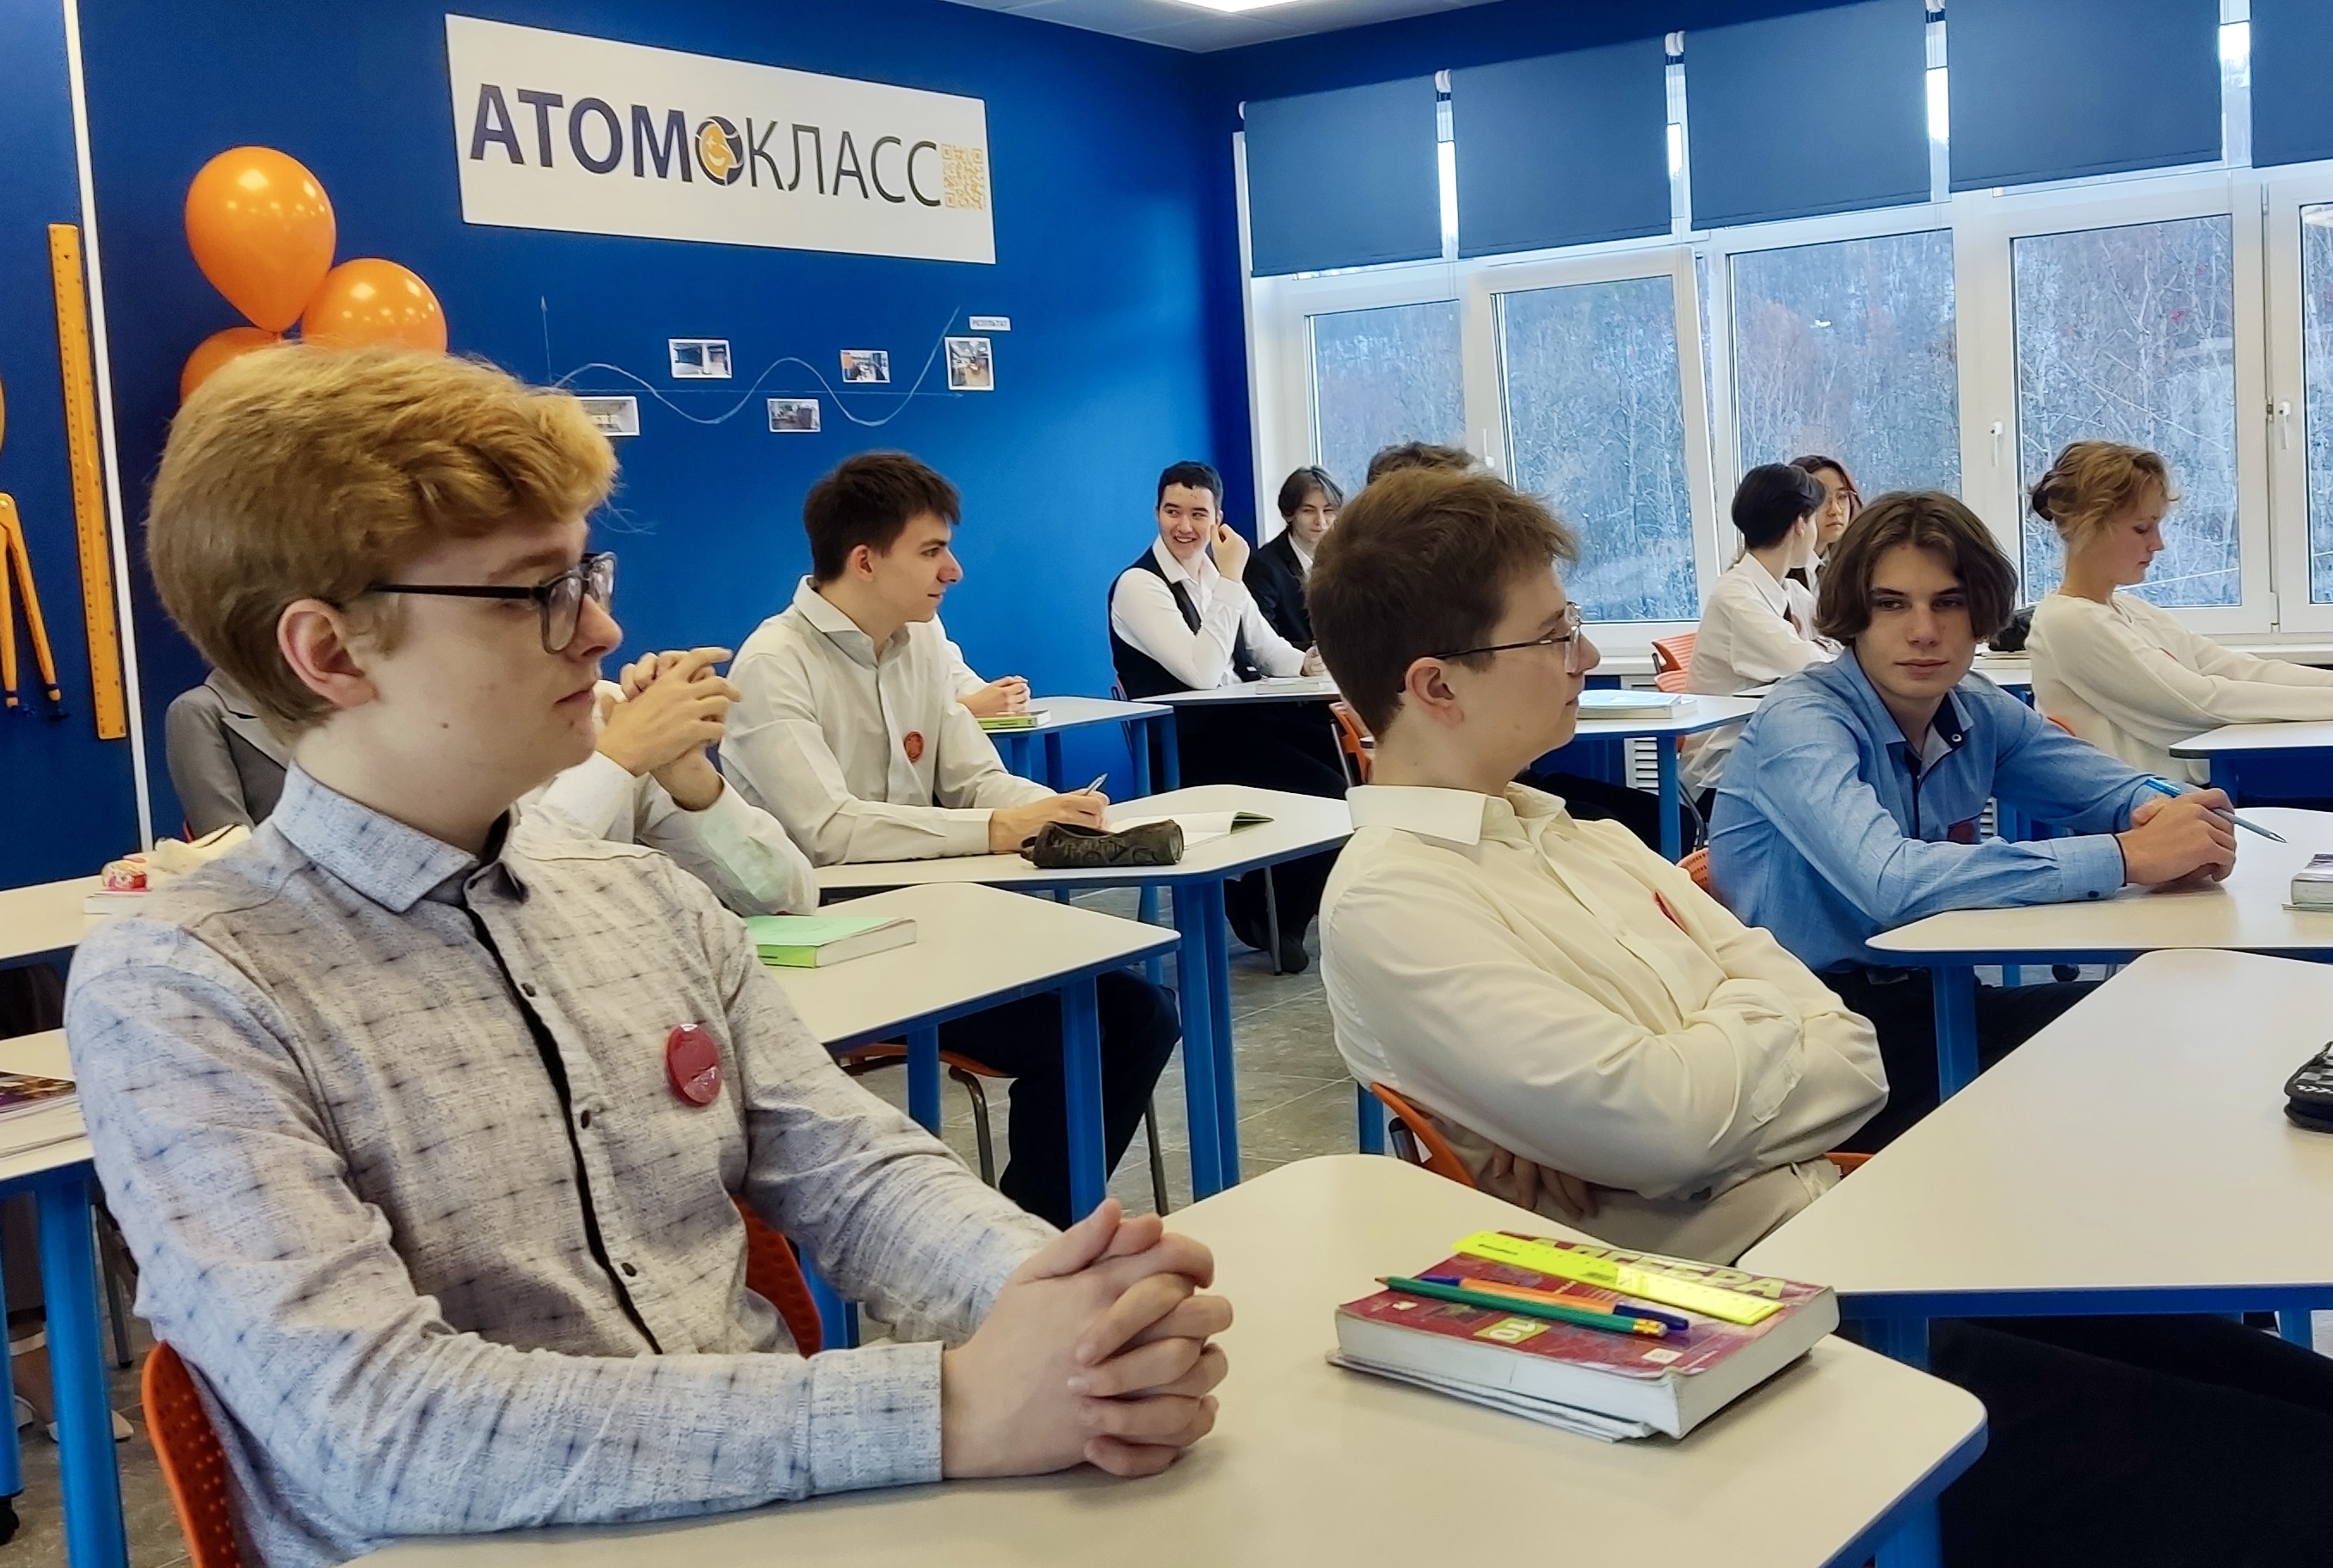 В Мурманском международном лицее при поддержке АтомЭнергоСбыта открылся атомкласс 